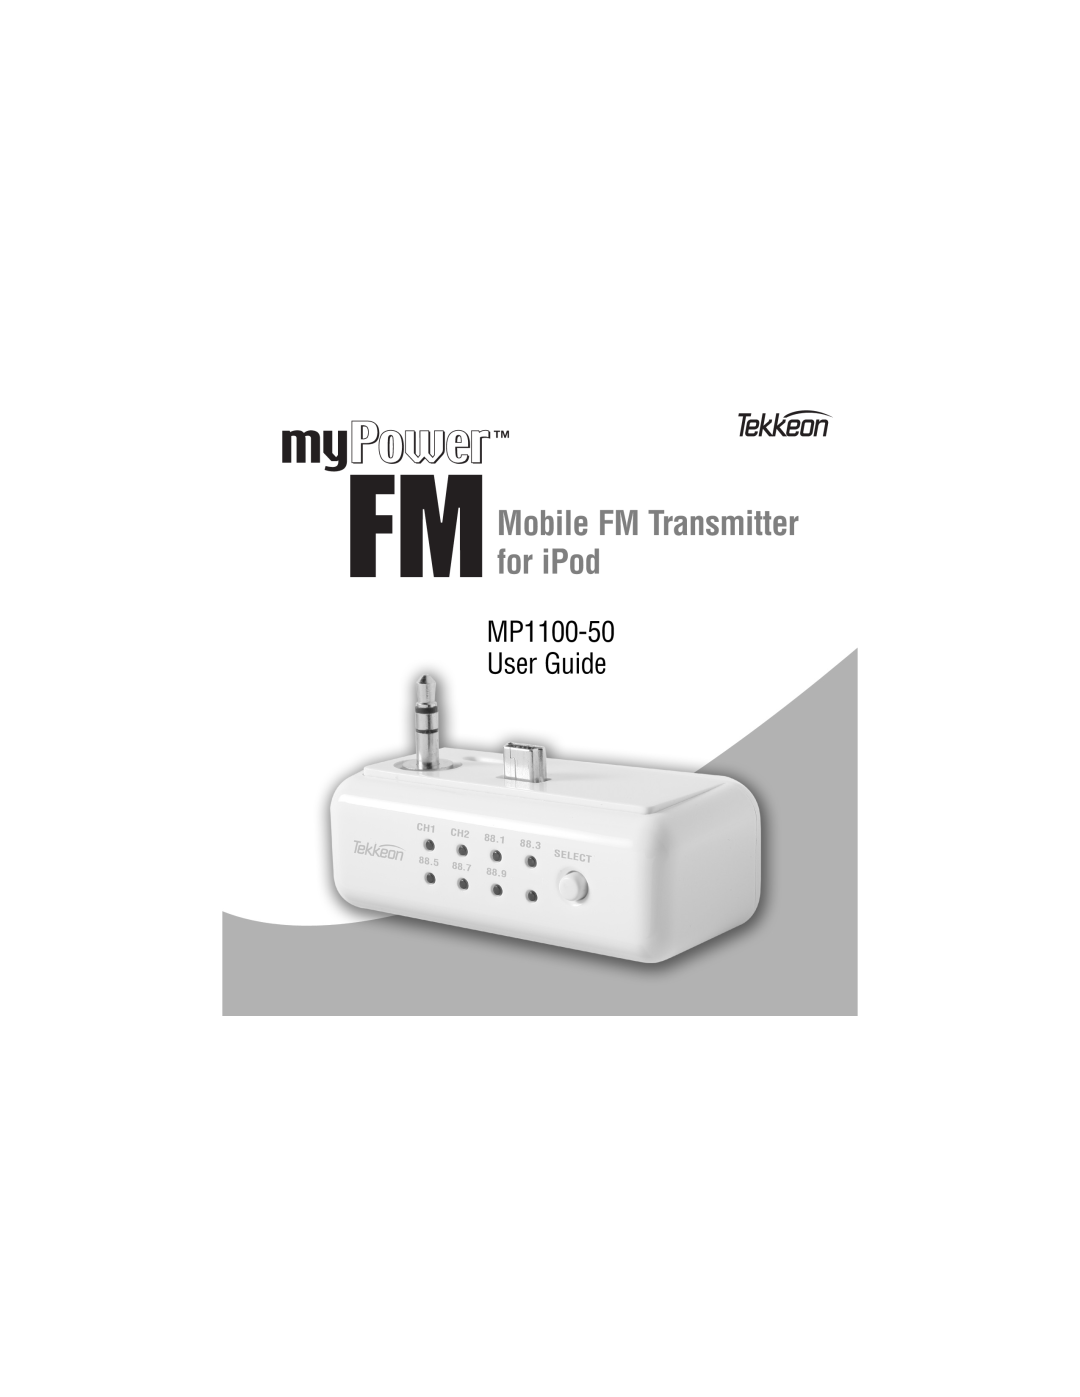 Tekkeon MP110050 manual Mobile FM Transmitter for iPod, MP1100-50 User Guide 